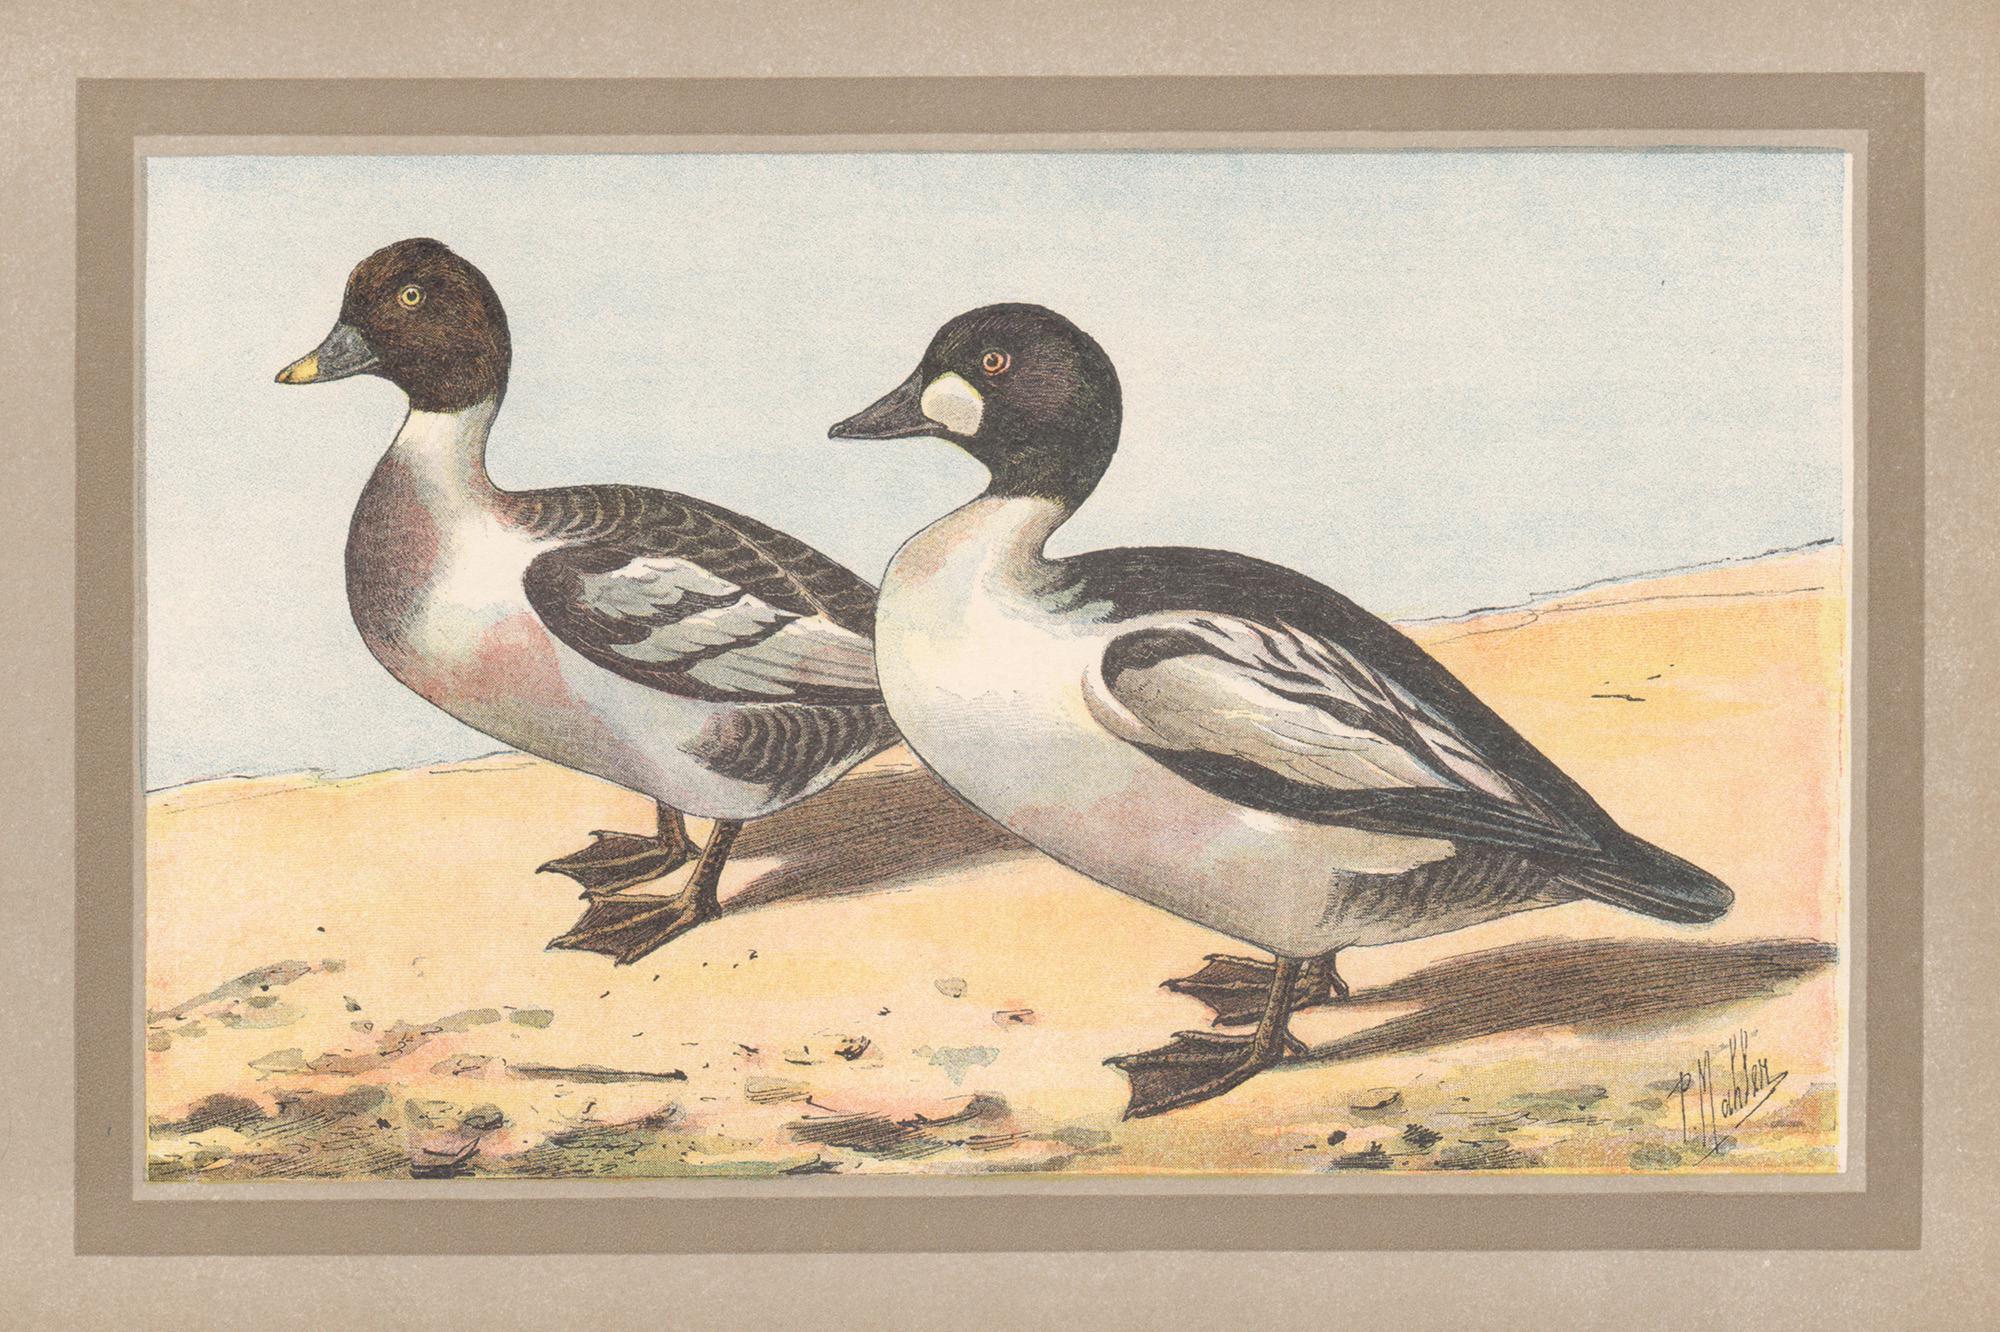 P. Mahler Print - Common Goldeneye, French antique bird duck art illustration print